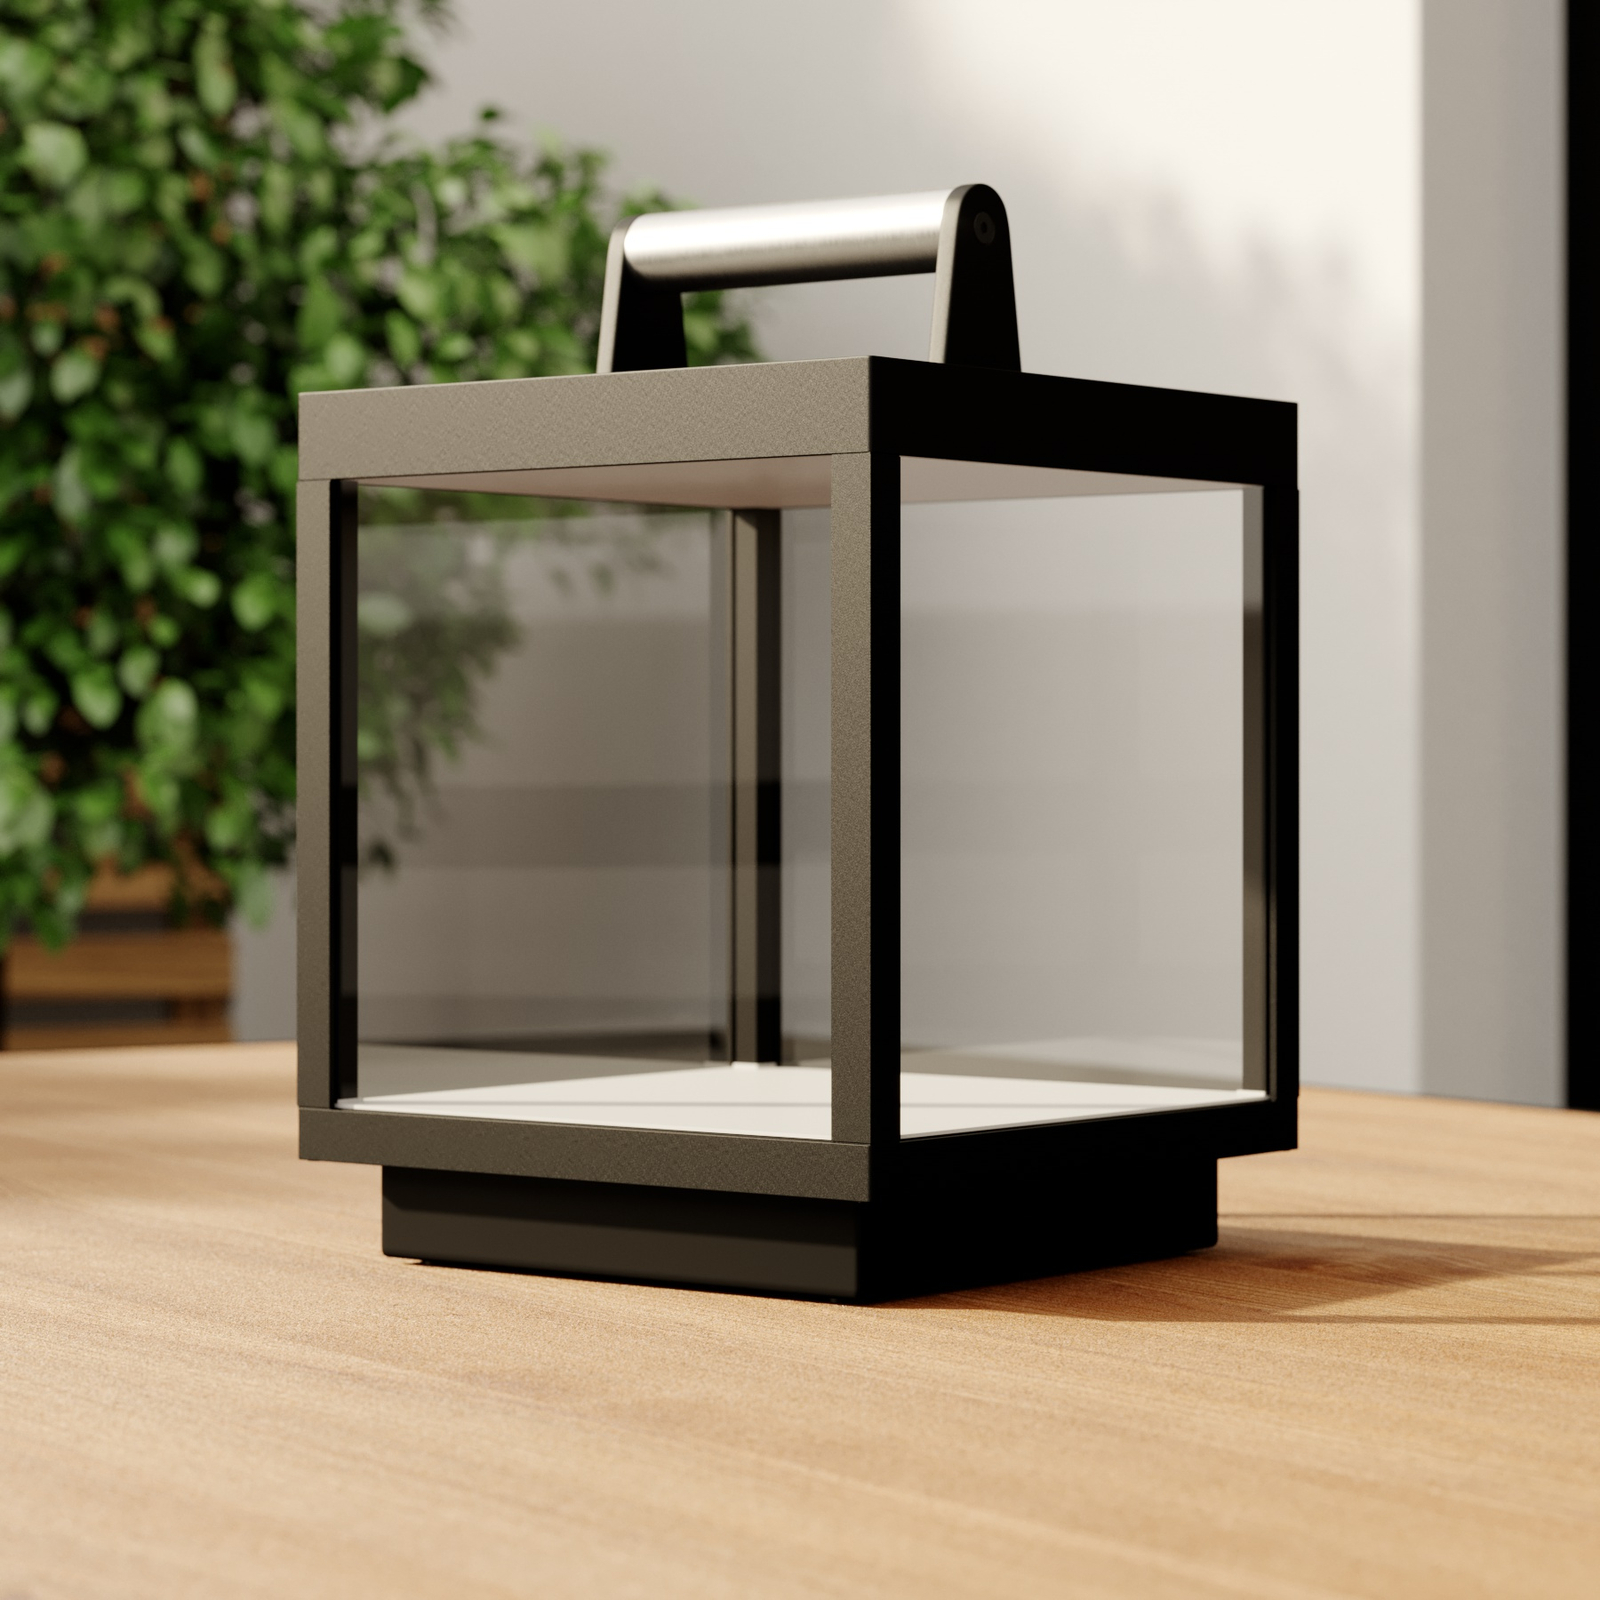 LED tafellamp Cube voor buiten, oplaadbaar